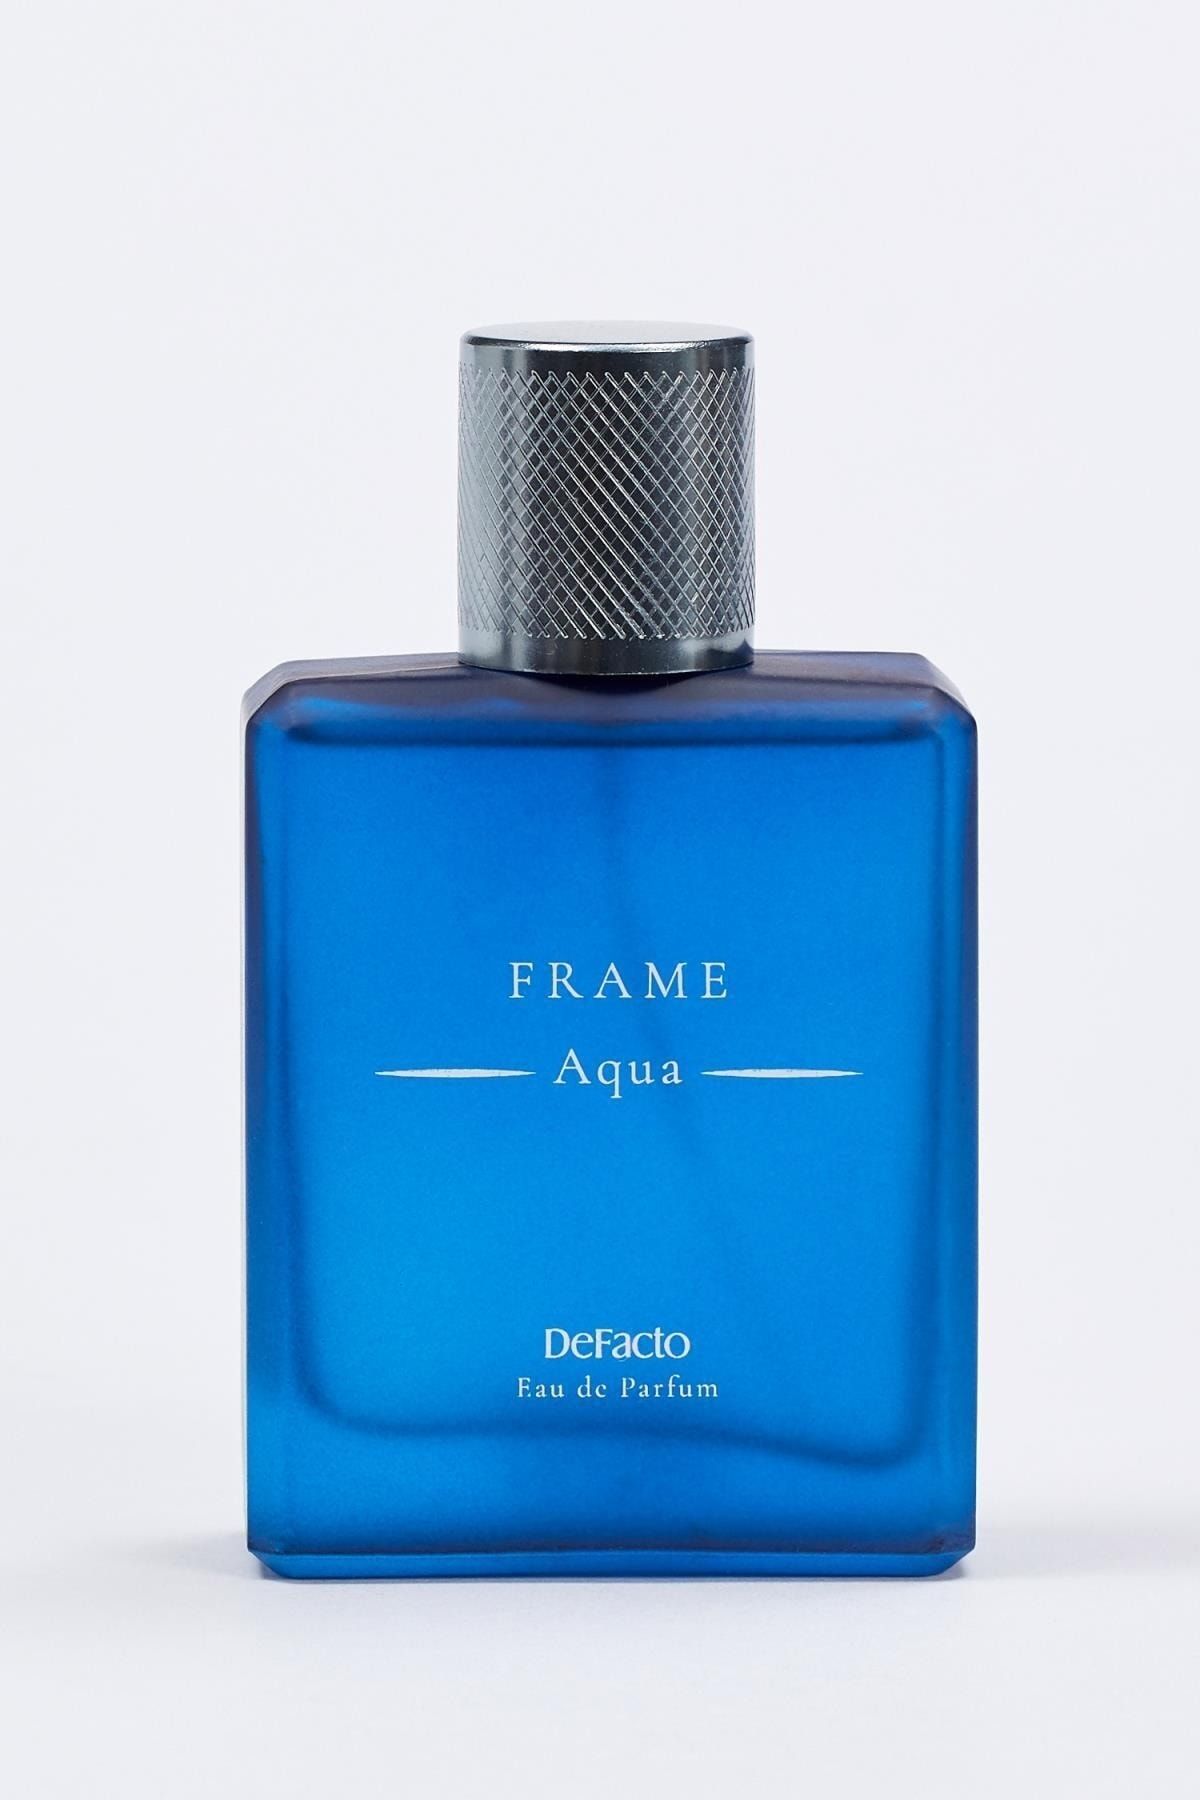 عطر مردانه آکوا فریم 85 میل دیفکتو دفکتو Aqua Frame Defacto